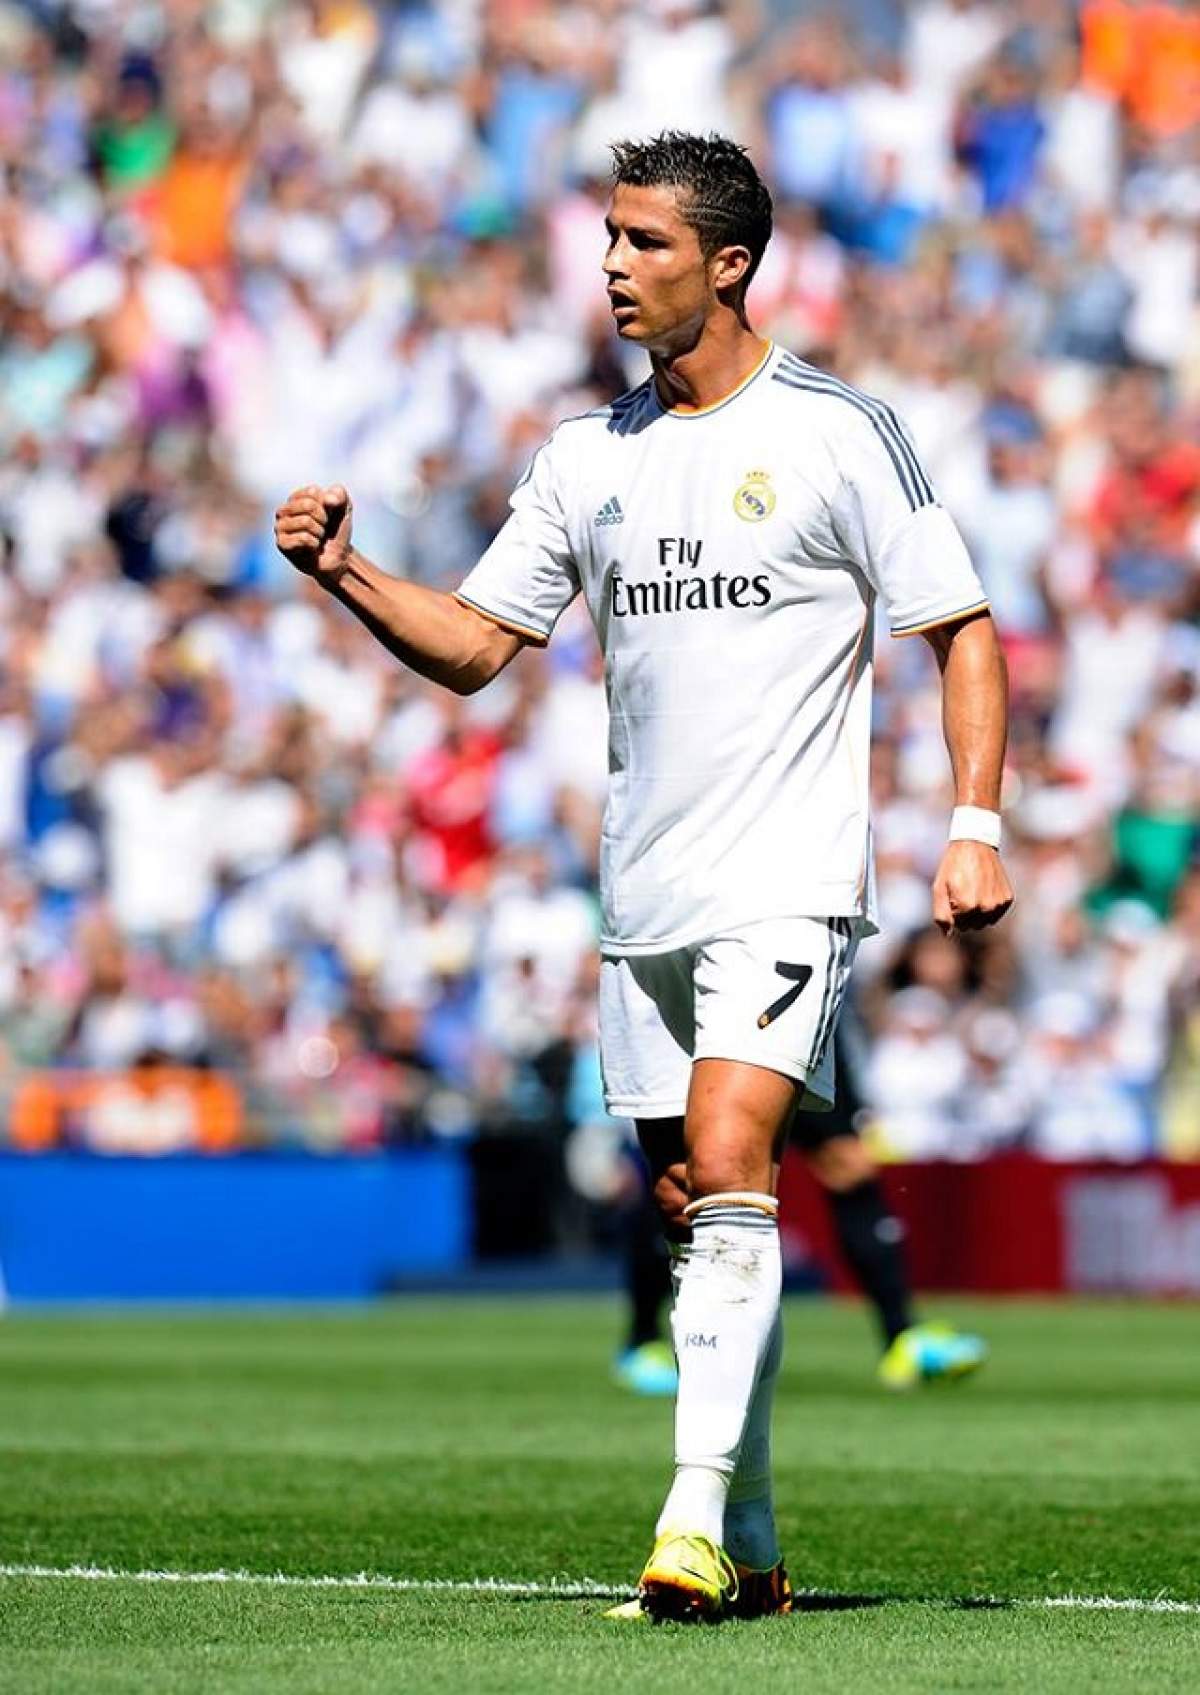 Cristiano Ronaldo este un bărbat bine dotat! Uite-l pe fotbalist aproape gol!